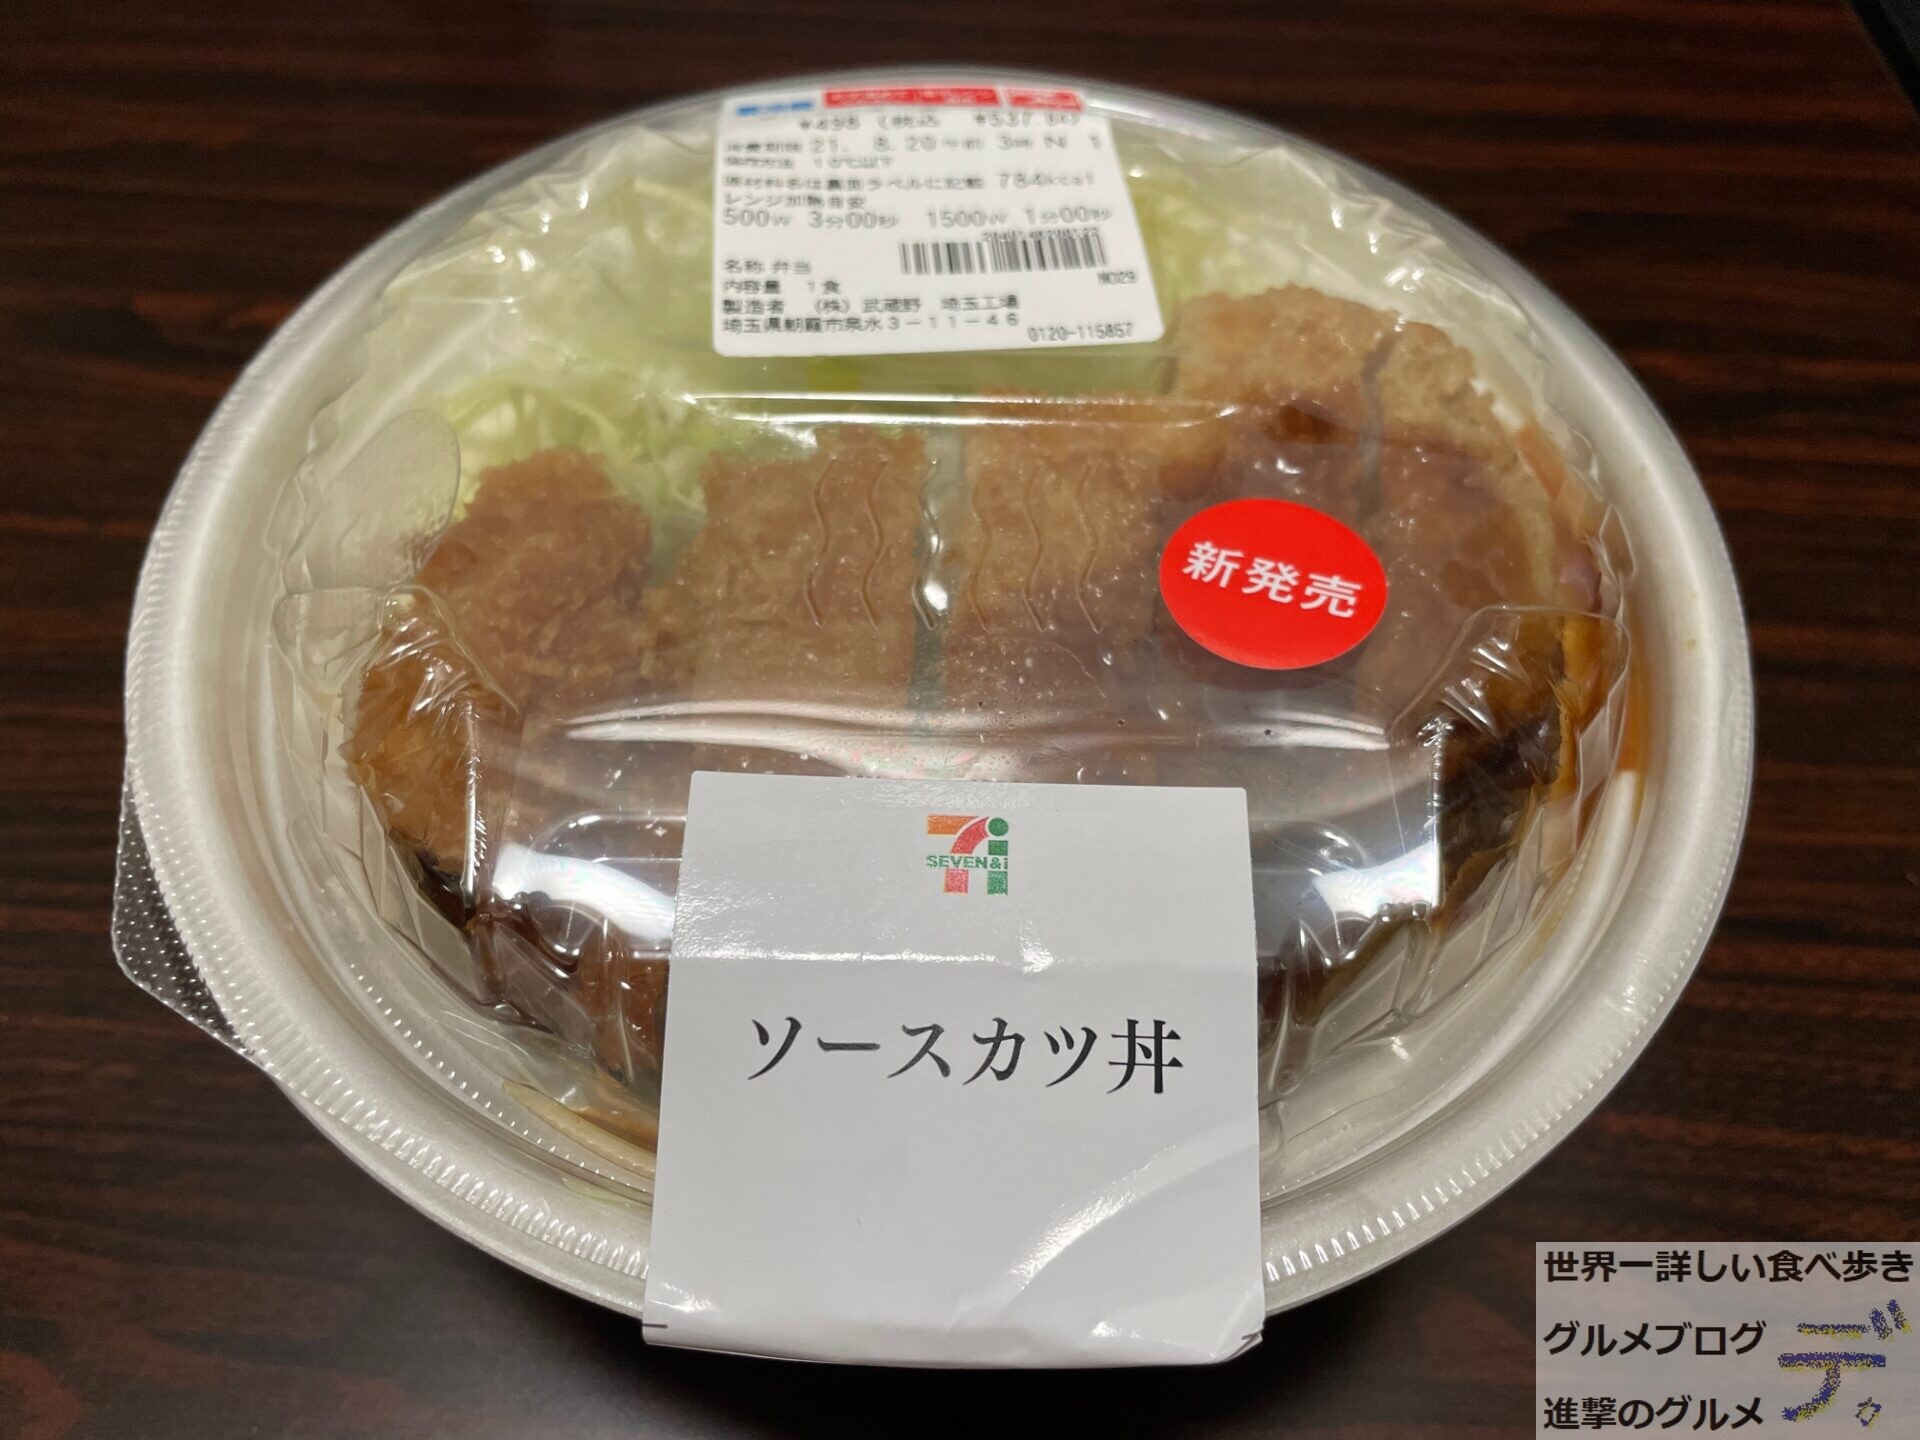 セブンイレブンの新商品 ソースカツ丼 を食べてみた感想 進撃のグルメ Yahoo Japan クリエイターズプログラム